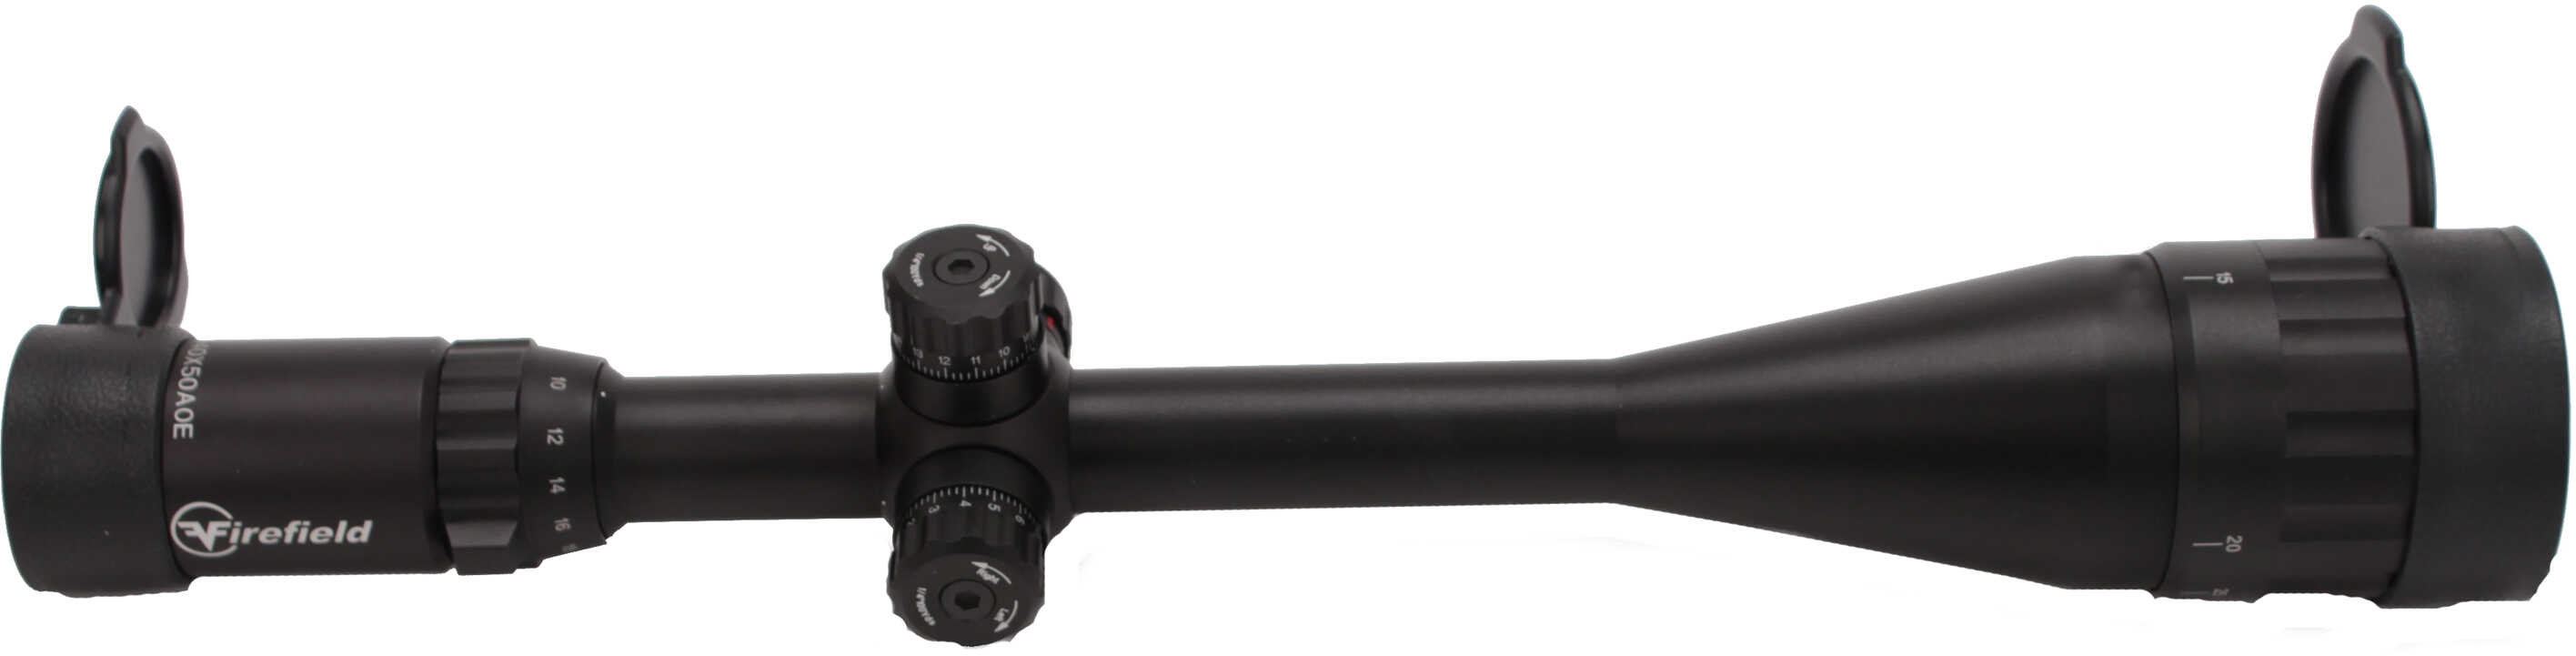 Firefield Tactical Riflescope 10-40x50 FF13046